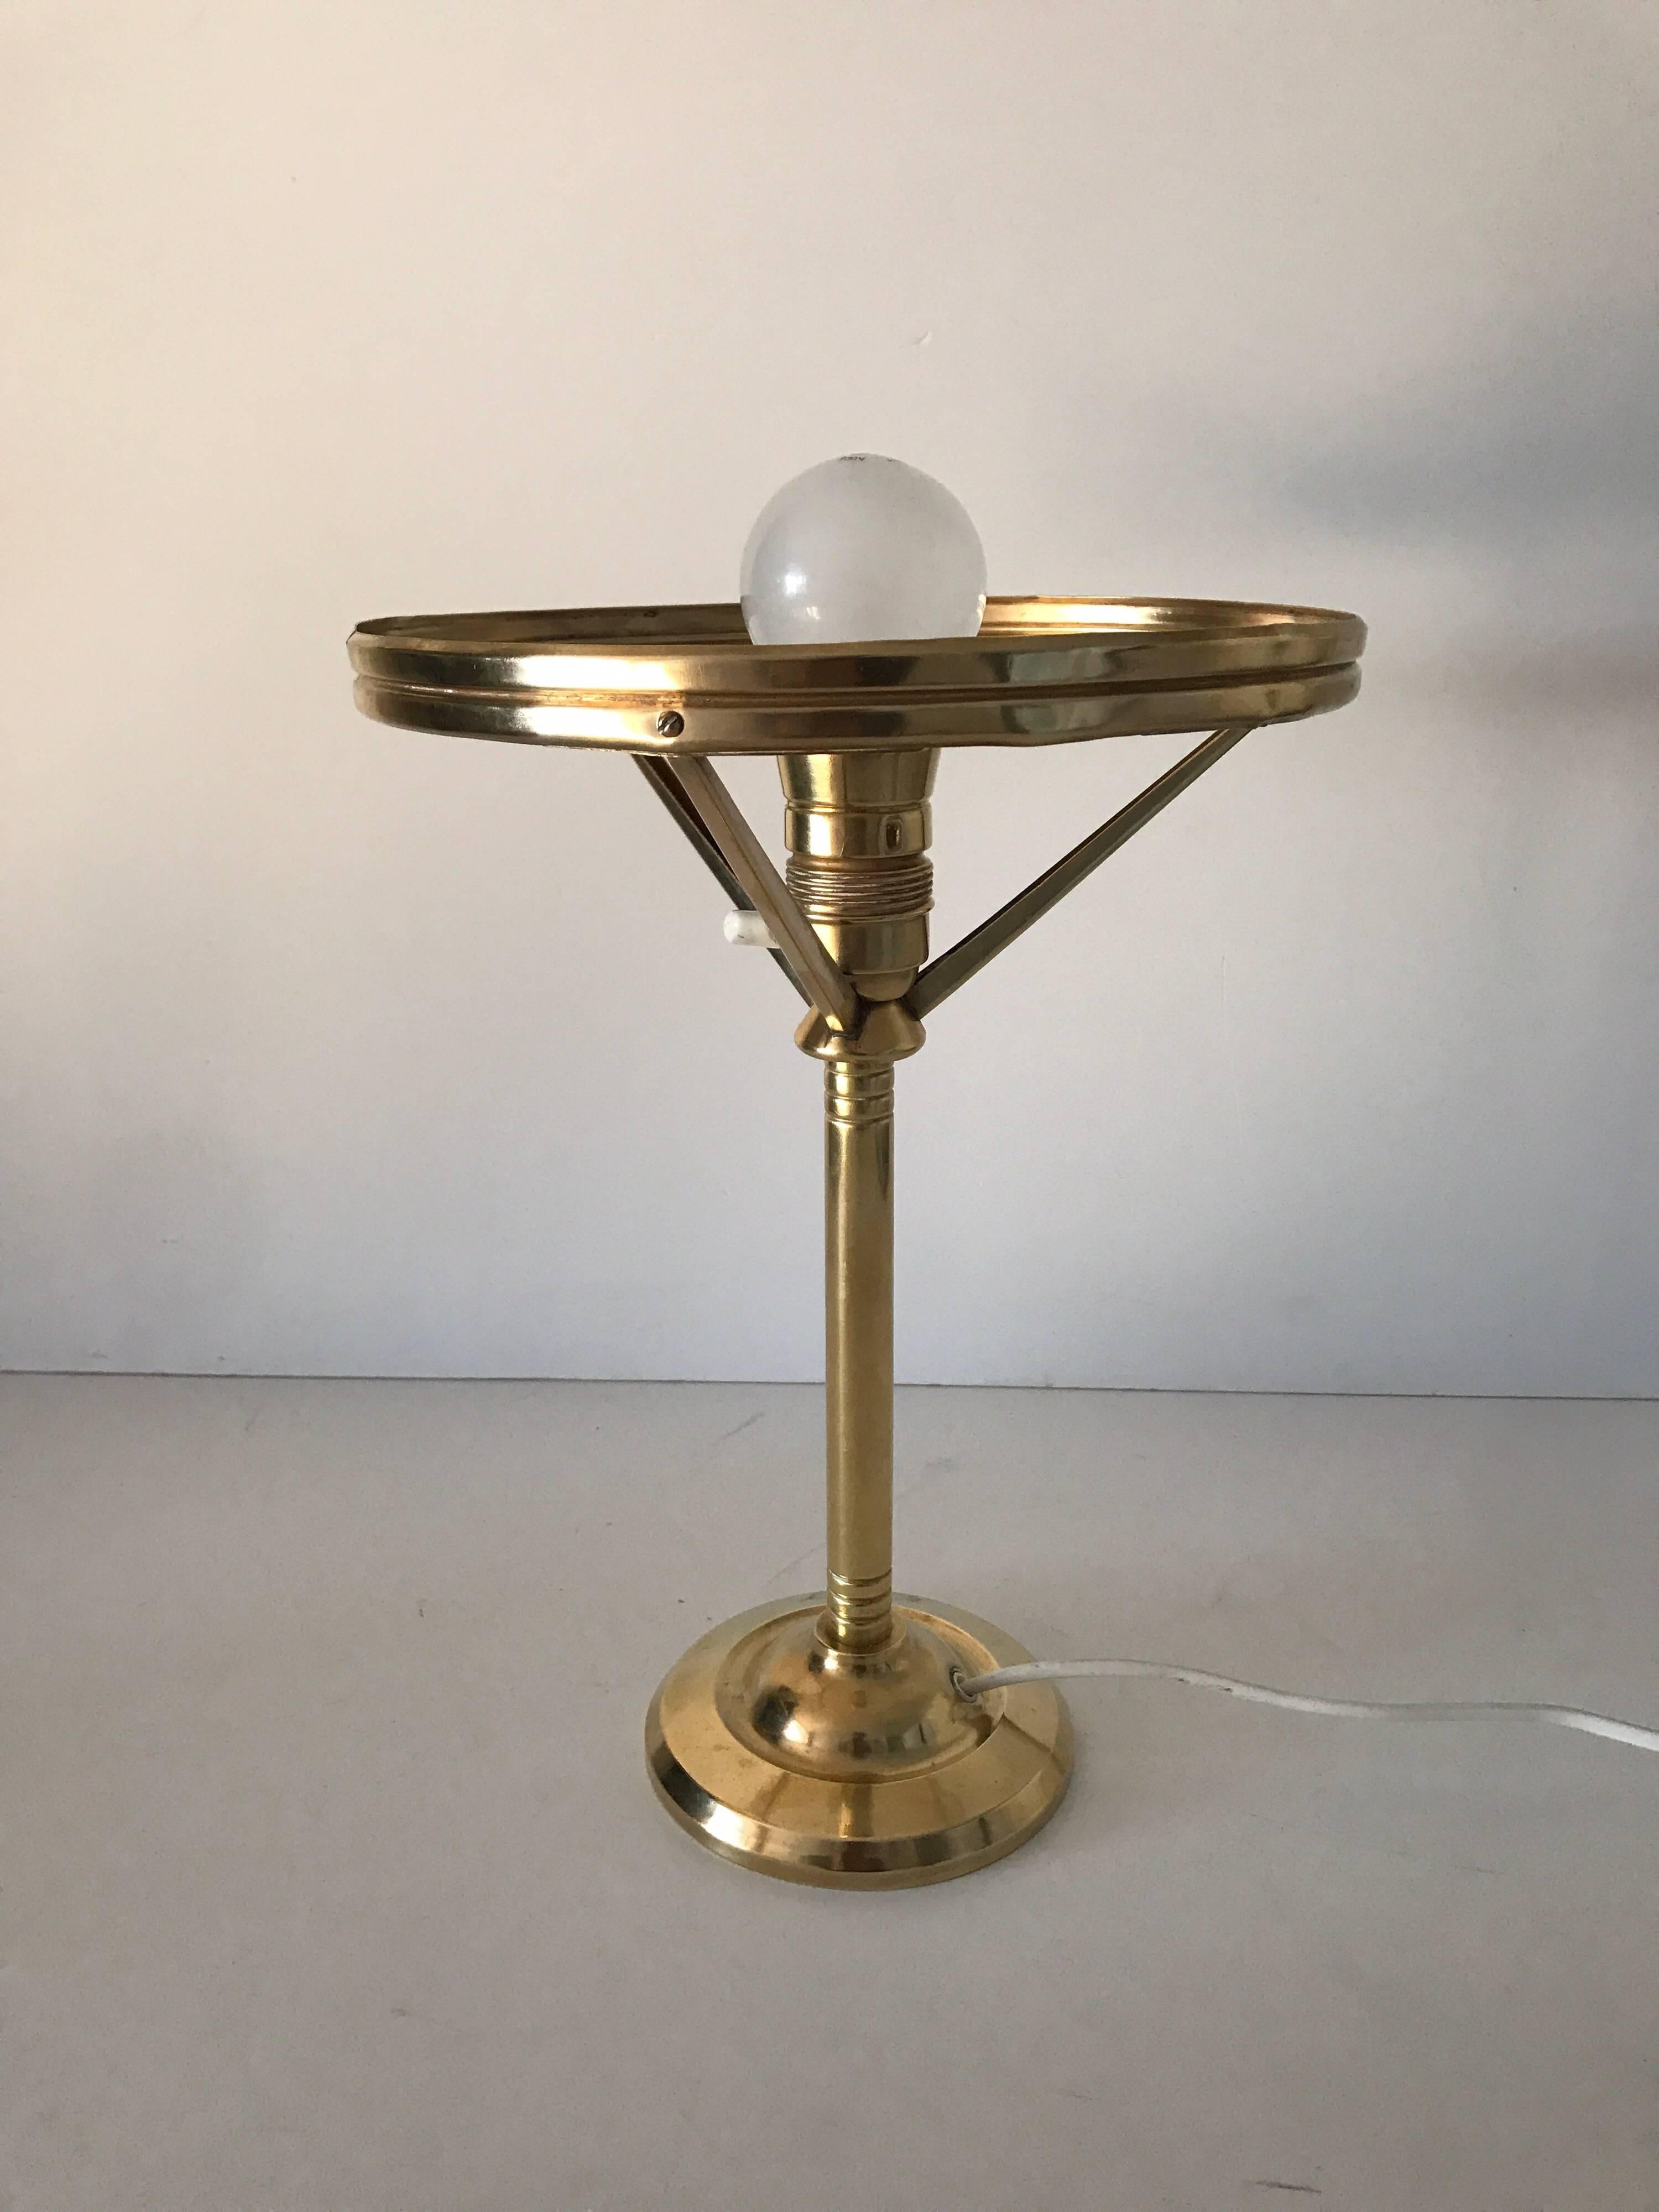 1920 Swedish Art Nouveau Jugendstil Brass and Art Glass Table Lamp For Sale 2